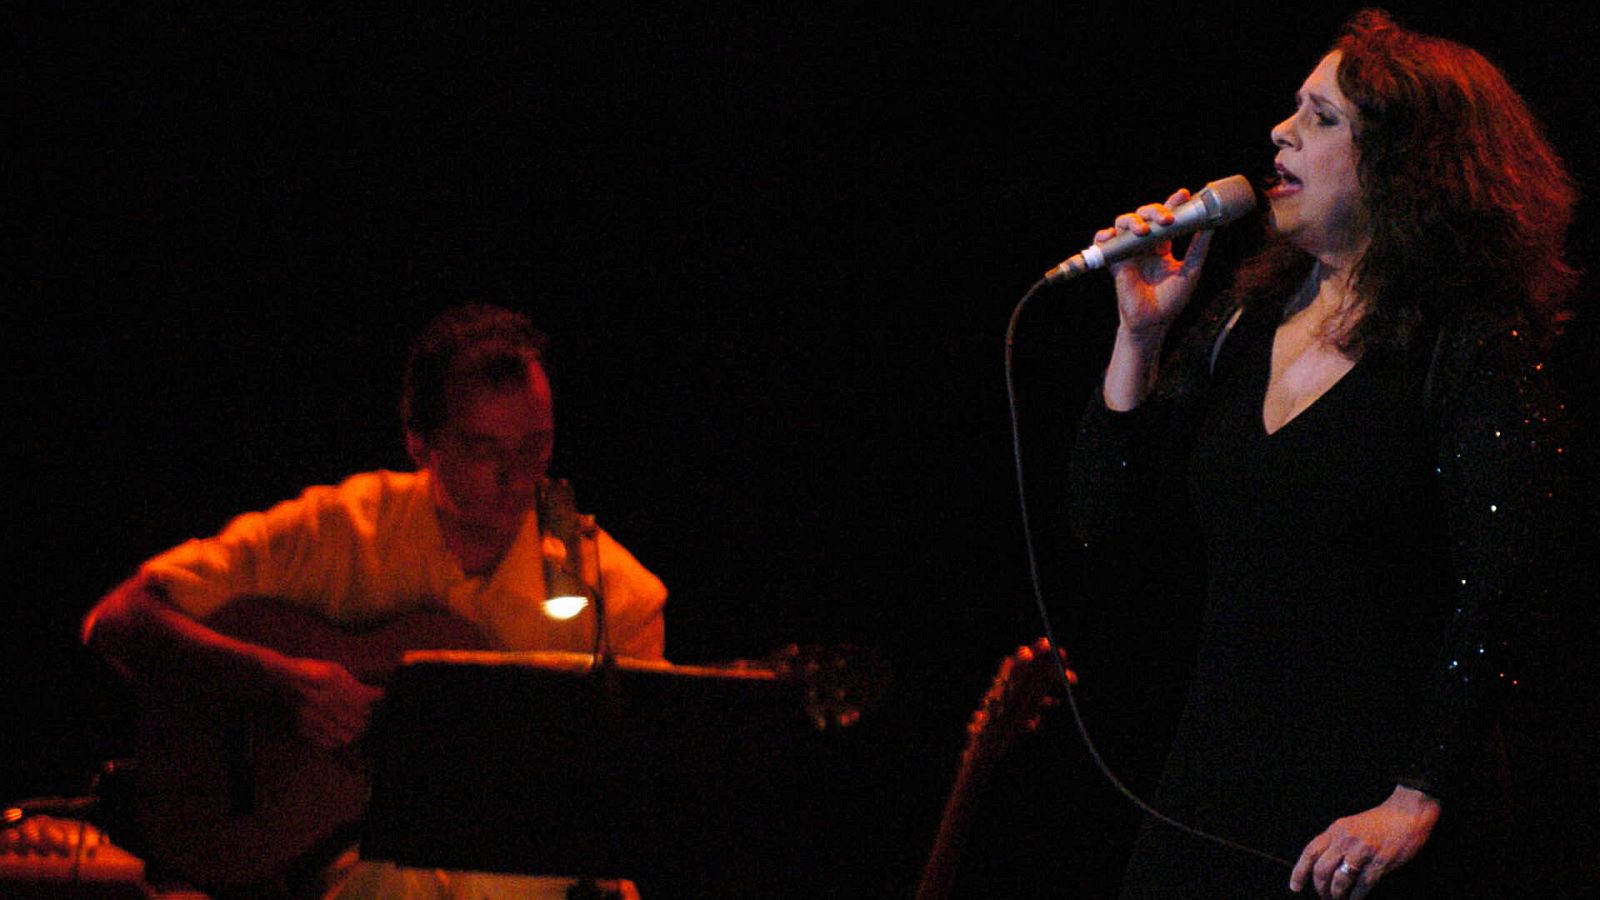 Fotografía de archivo fechada el 21 de septiembre de 2005 que muestra a la cantante brasileña Gal Costa durante un concierto en Bogotá